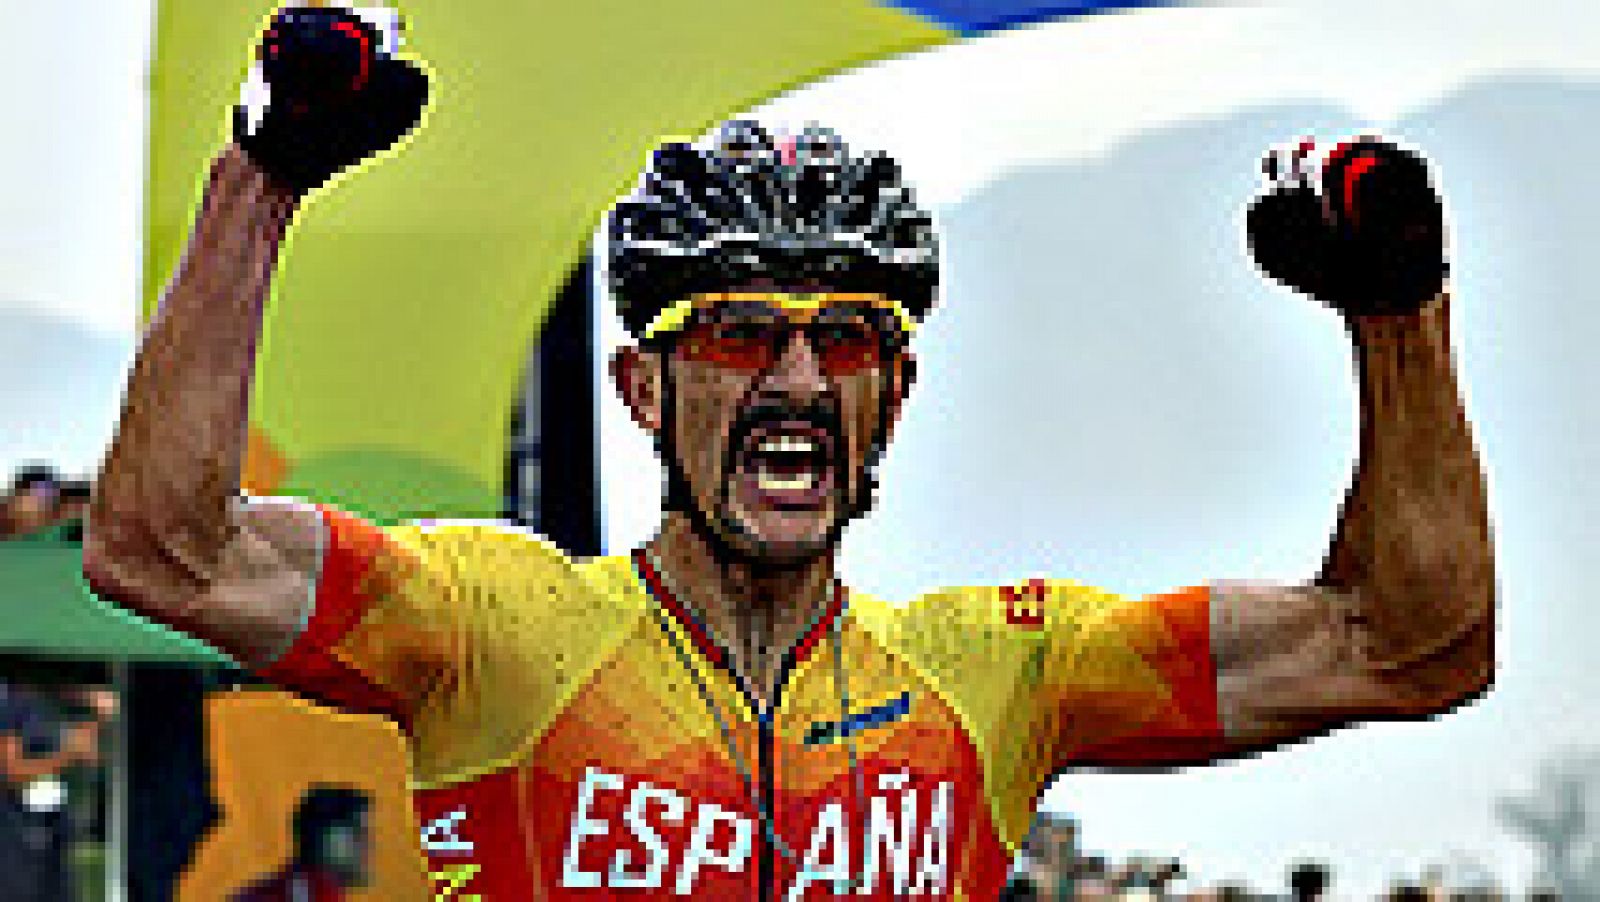 El riojano Carlos Coloma, tercer clasificado en la prueba de ciclismo de montaña de los Juegos Olímpicos de Río 2016, aseguró que "confiaba plenamente" en sus opciones de éxito en Río de Janeiro.